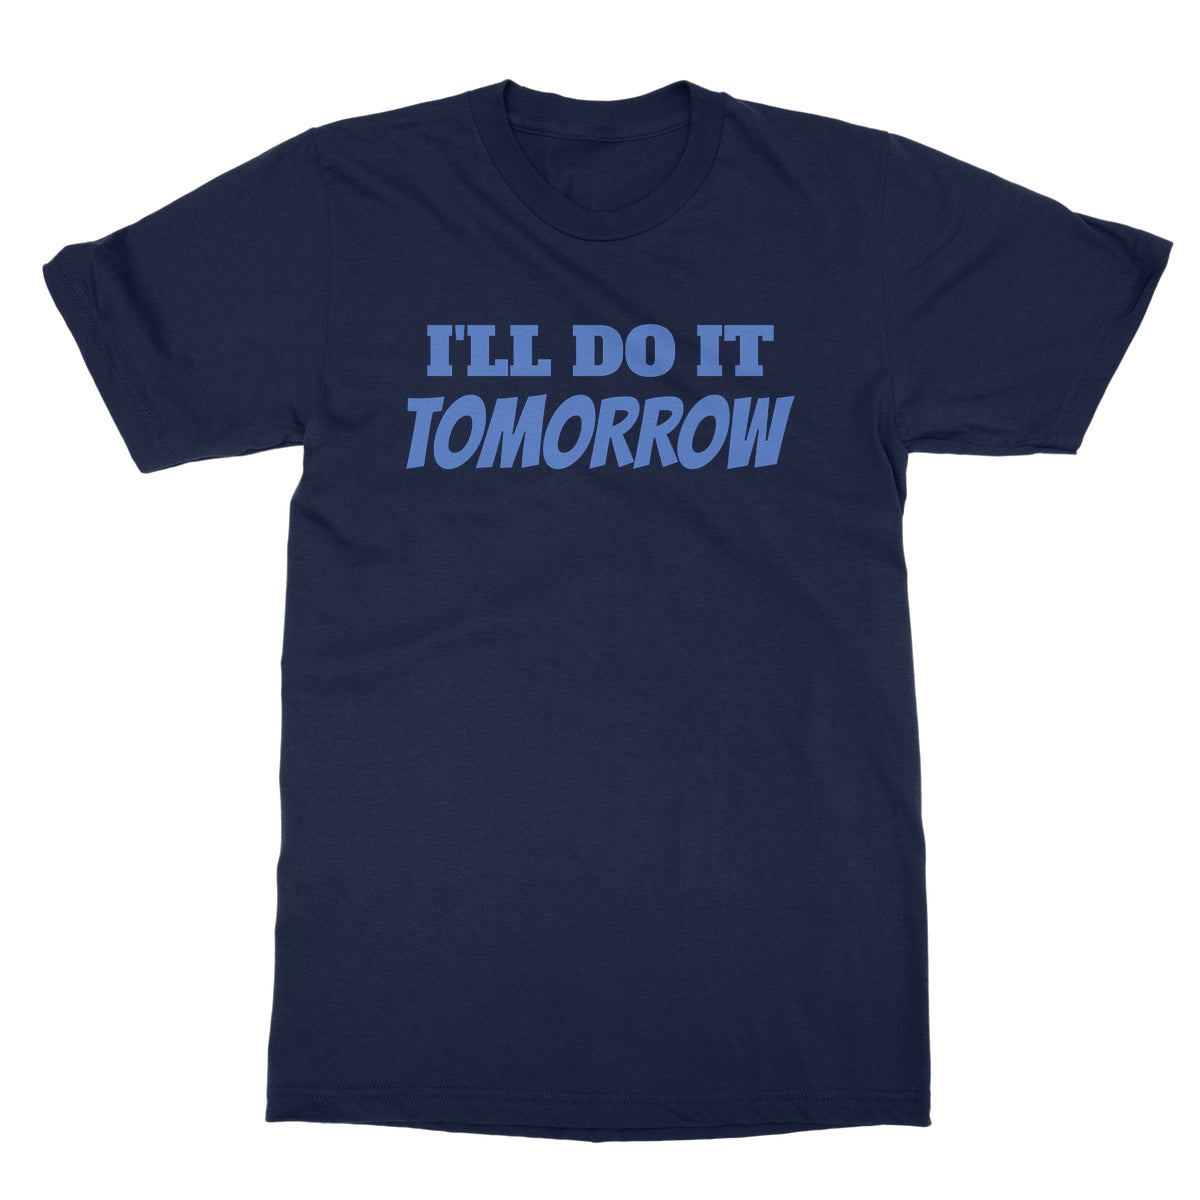 Ill do it tomorrow t shirt navy